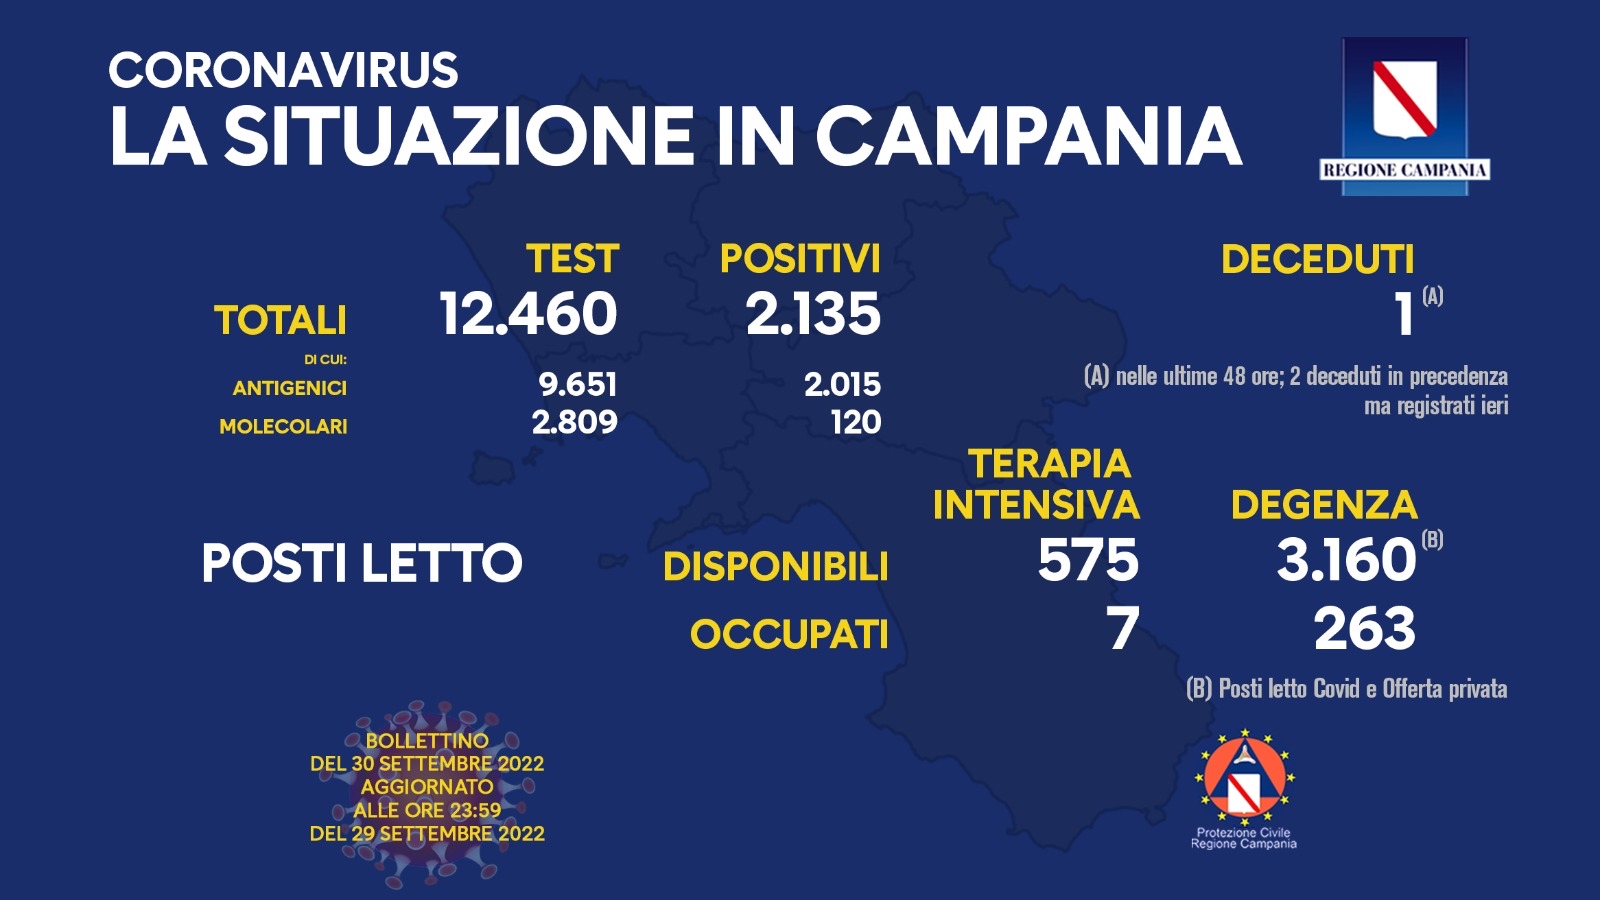 Regione Campania: Coronavirus, Unità di Crisi, Bollettino, 2.135 casi positivi,1 decesso